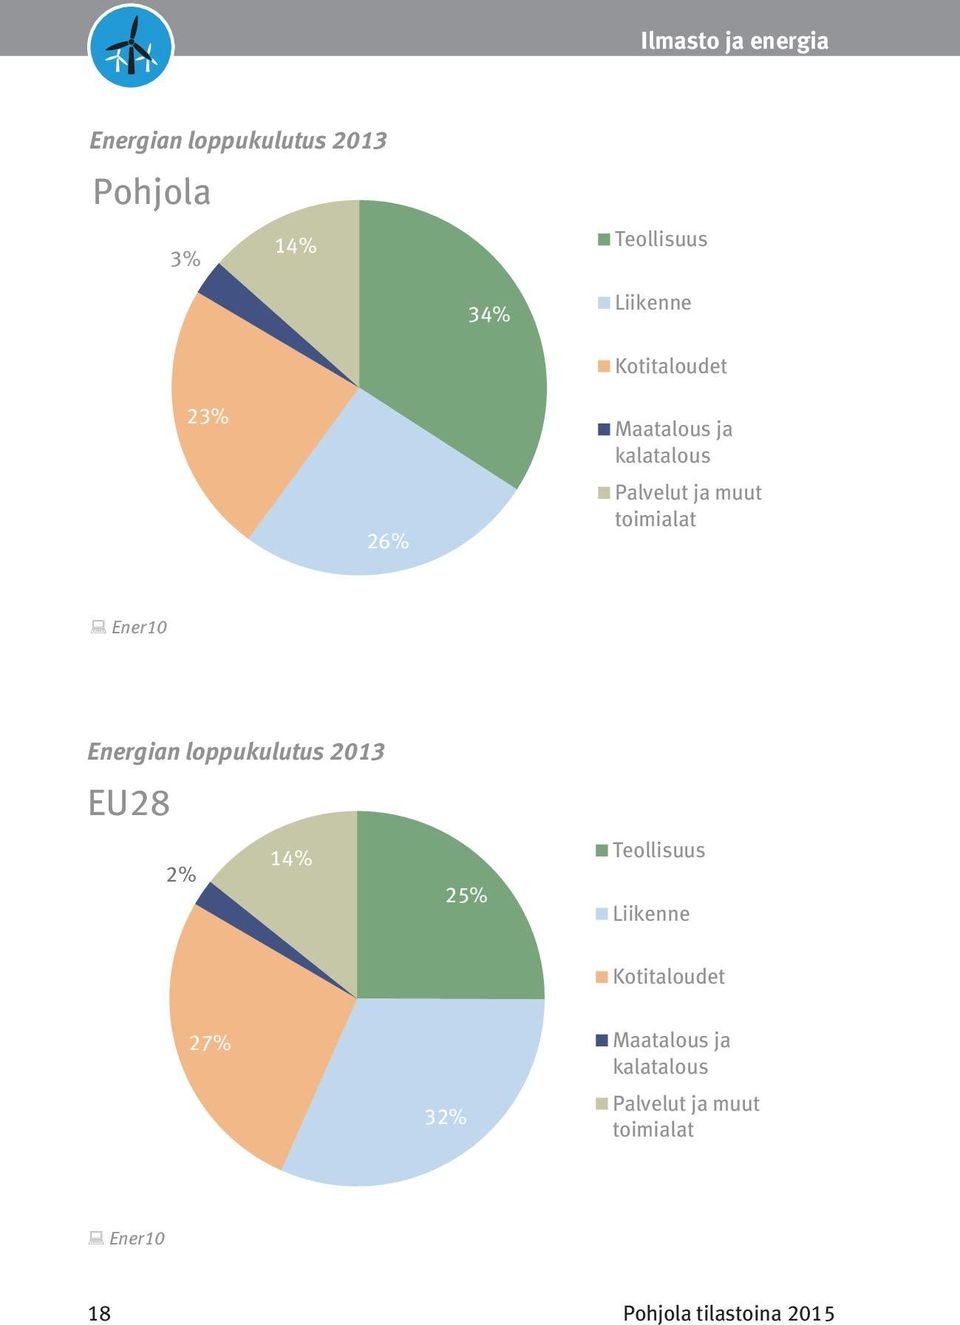 Ener10 Energian loppukulutus 2013 EU28 Energian loppukulutus 2013 EU28 Ener10 2% 2% 27% 27% 14% Teollisuus 25% Liikenne Kotitaloudet 14% Teollisuus